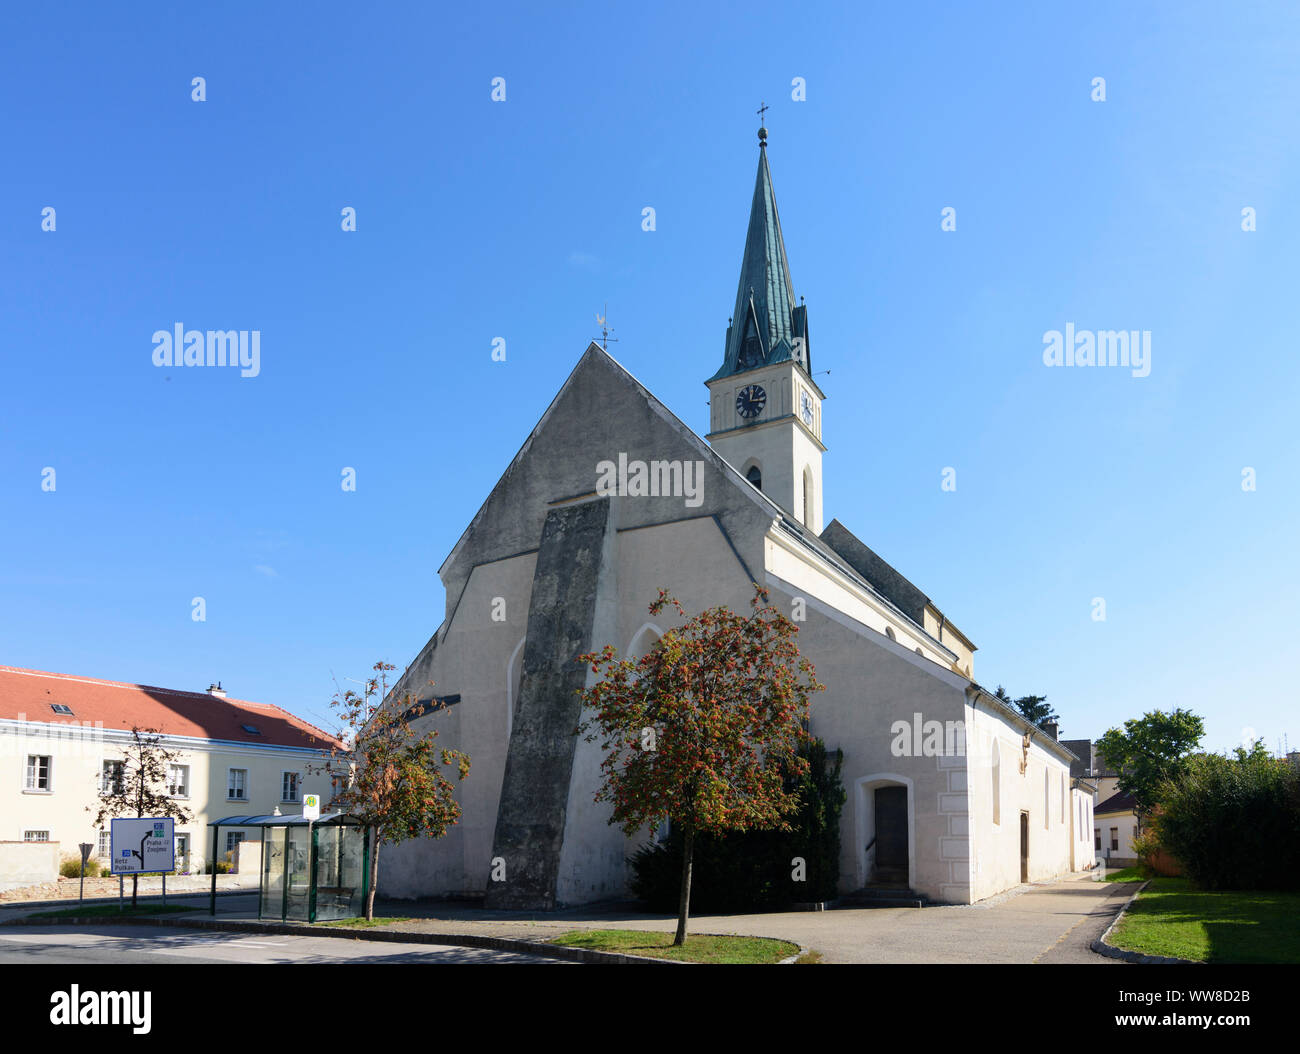 Guntersdorf, church in Weinviertel (wine quarter), Lower Austria, Austria Stock Photo